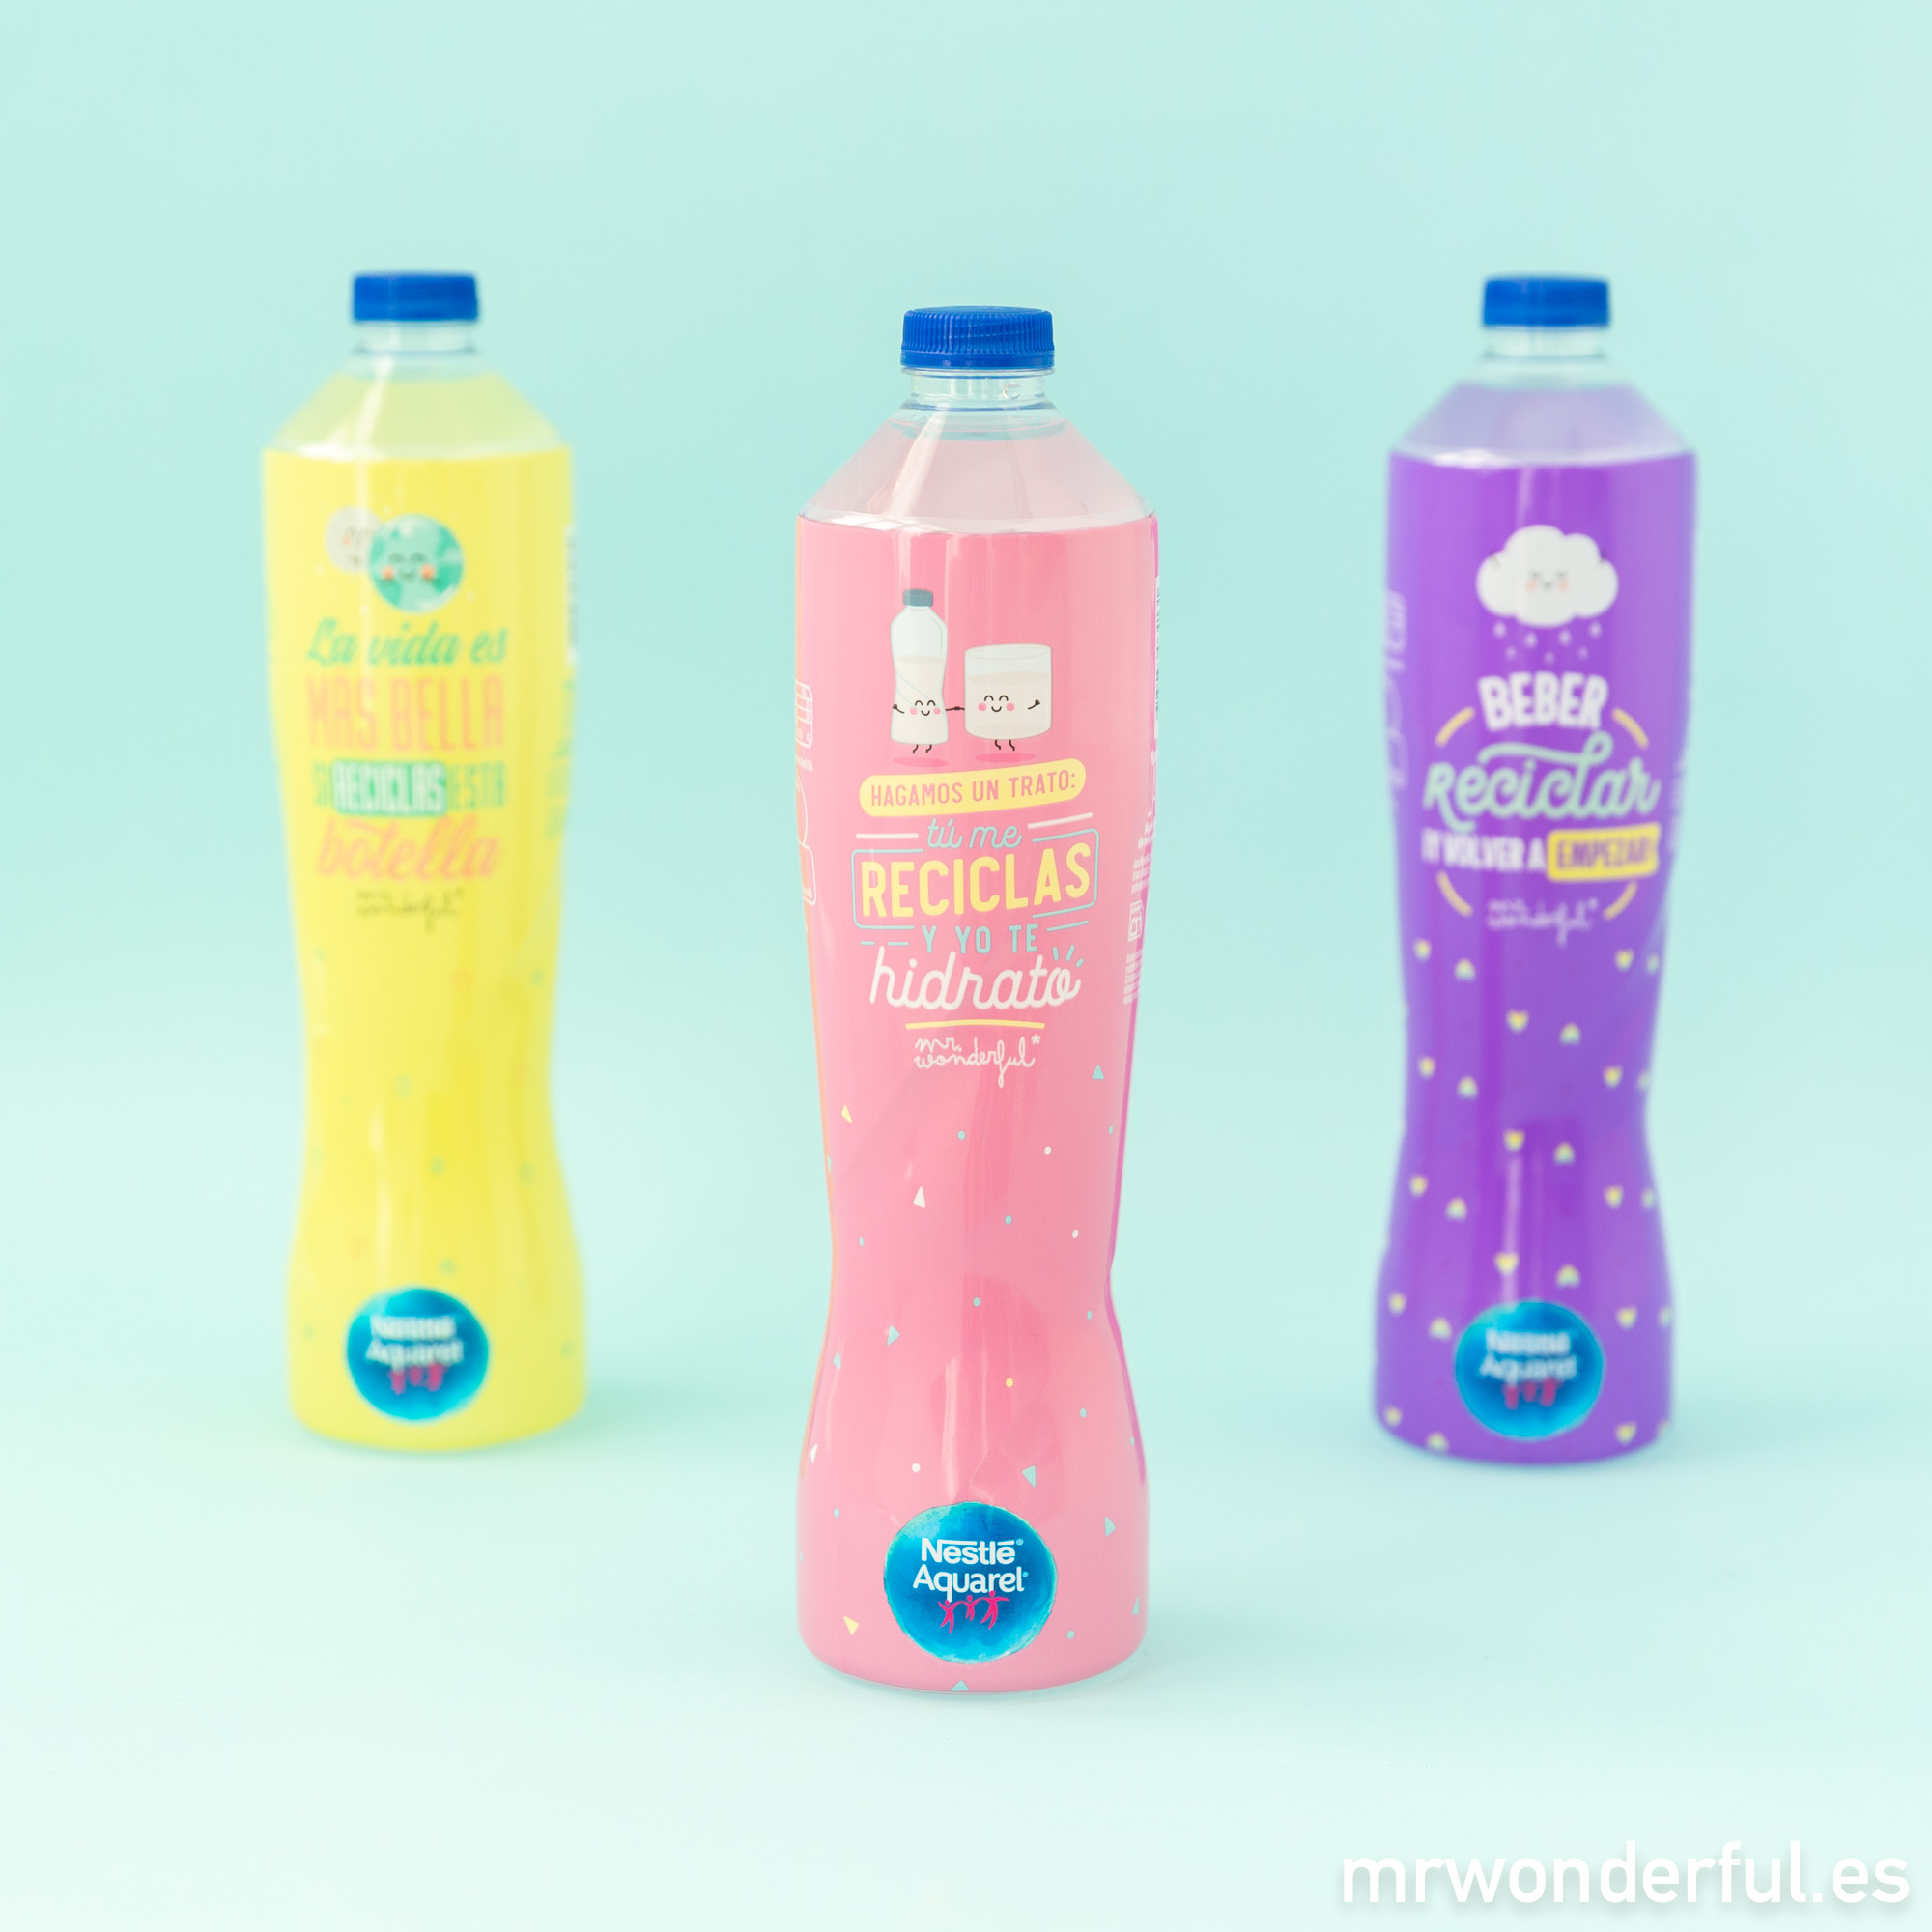 Nuevo formato de Nestlé Aquarel con diseño de Mr. Wonderful